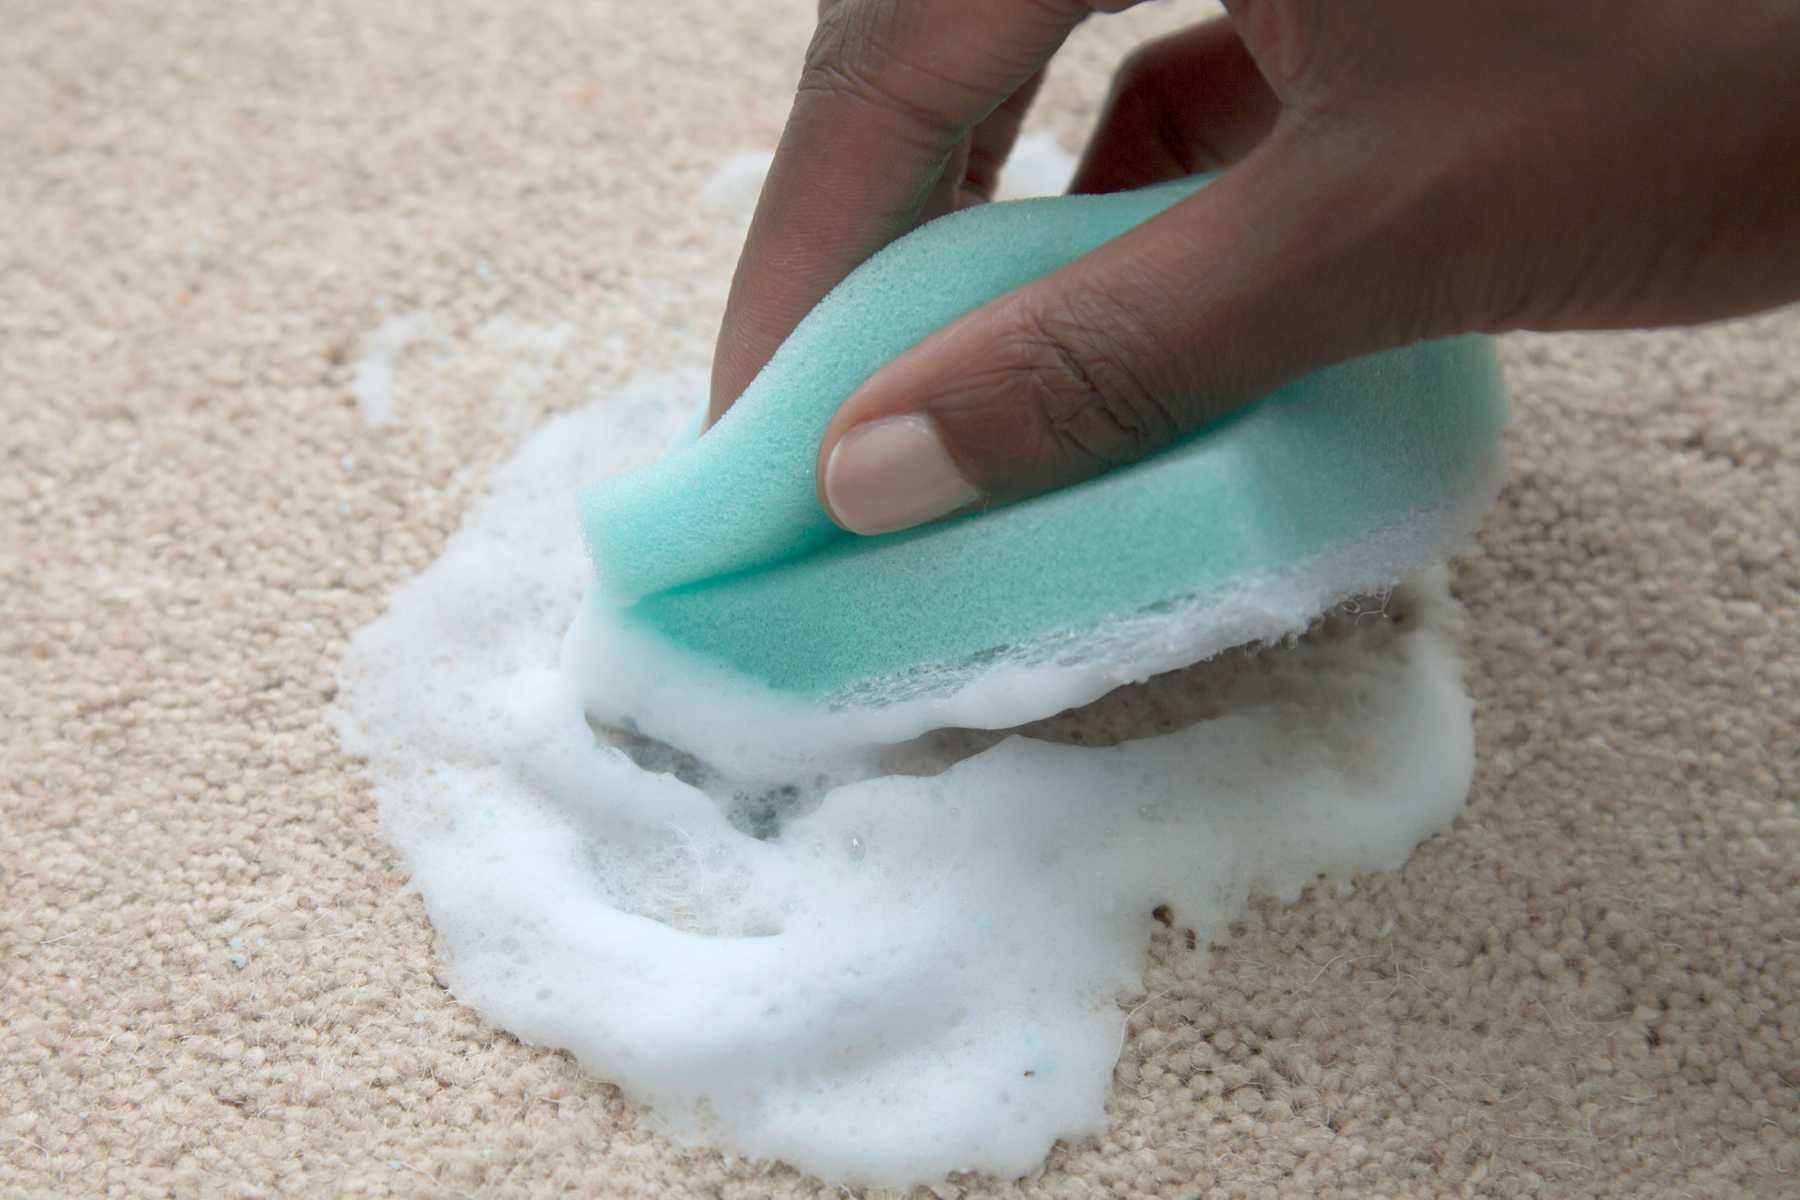 Как почистить ковер в домашних условиях быстро и эффективно, чтобы не было грязи и запаха?